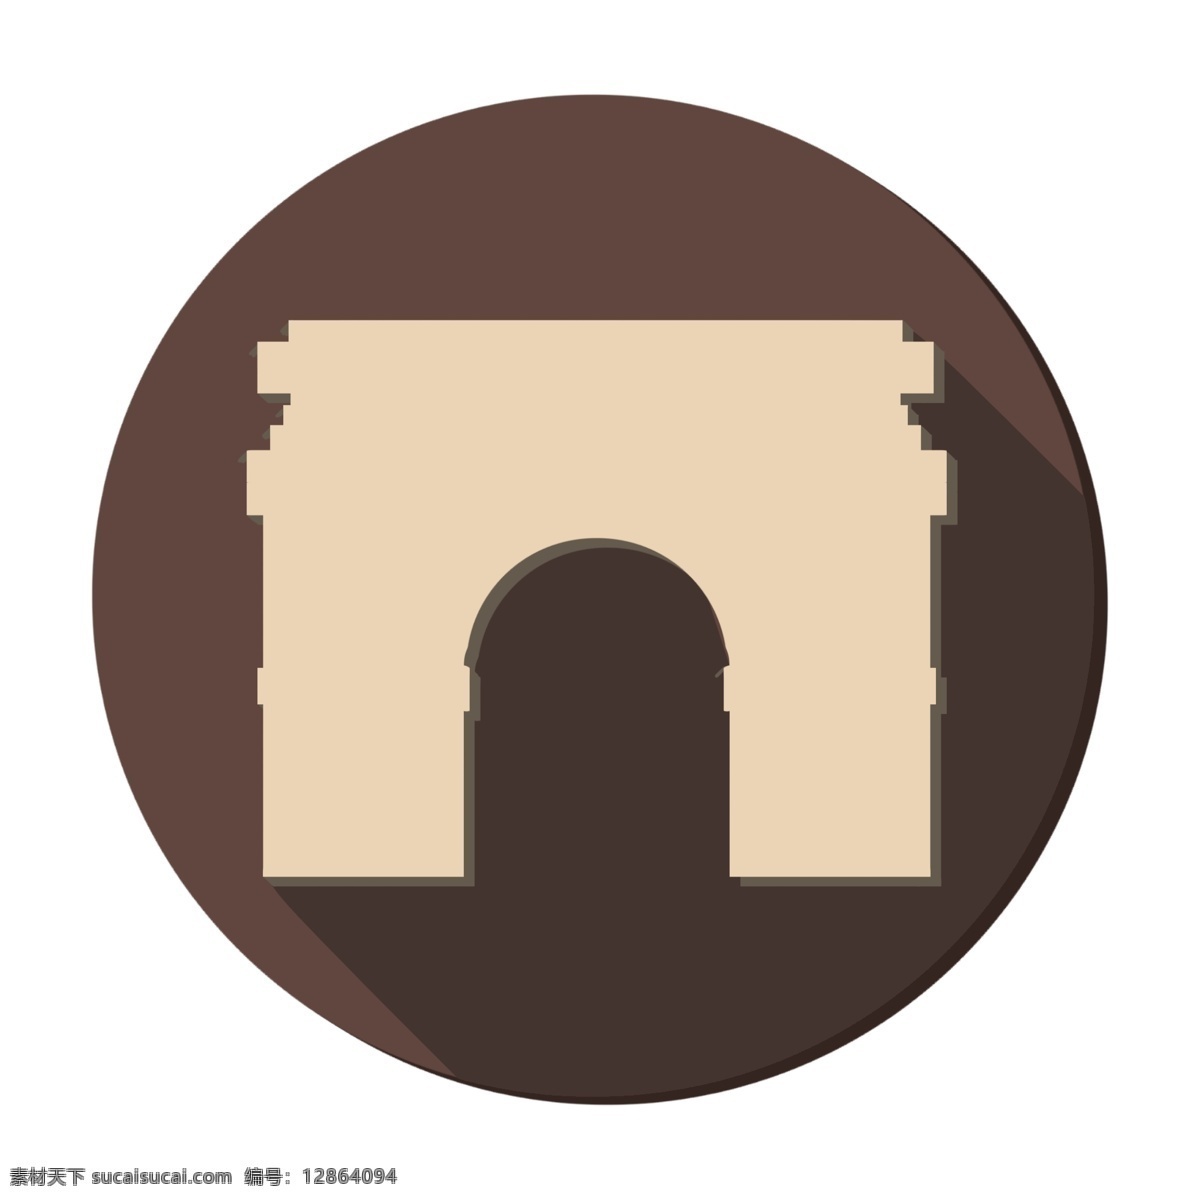 奥地利 凯旋门 剪影 图标 罗马式凯旋门 装饰风格 免抠图 装饰 手绘 手绘风格 卡通的 简约